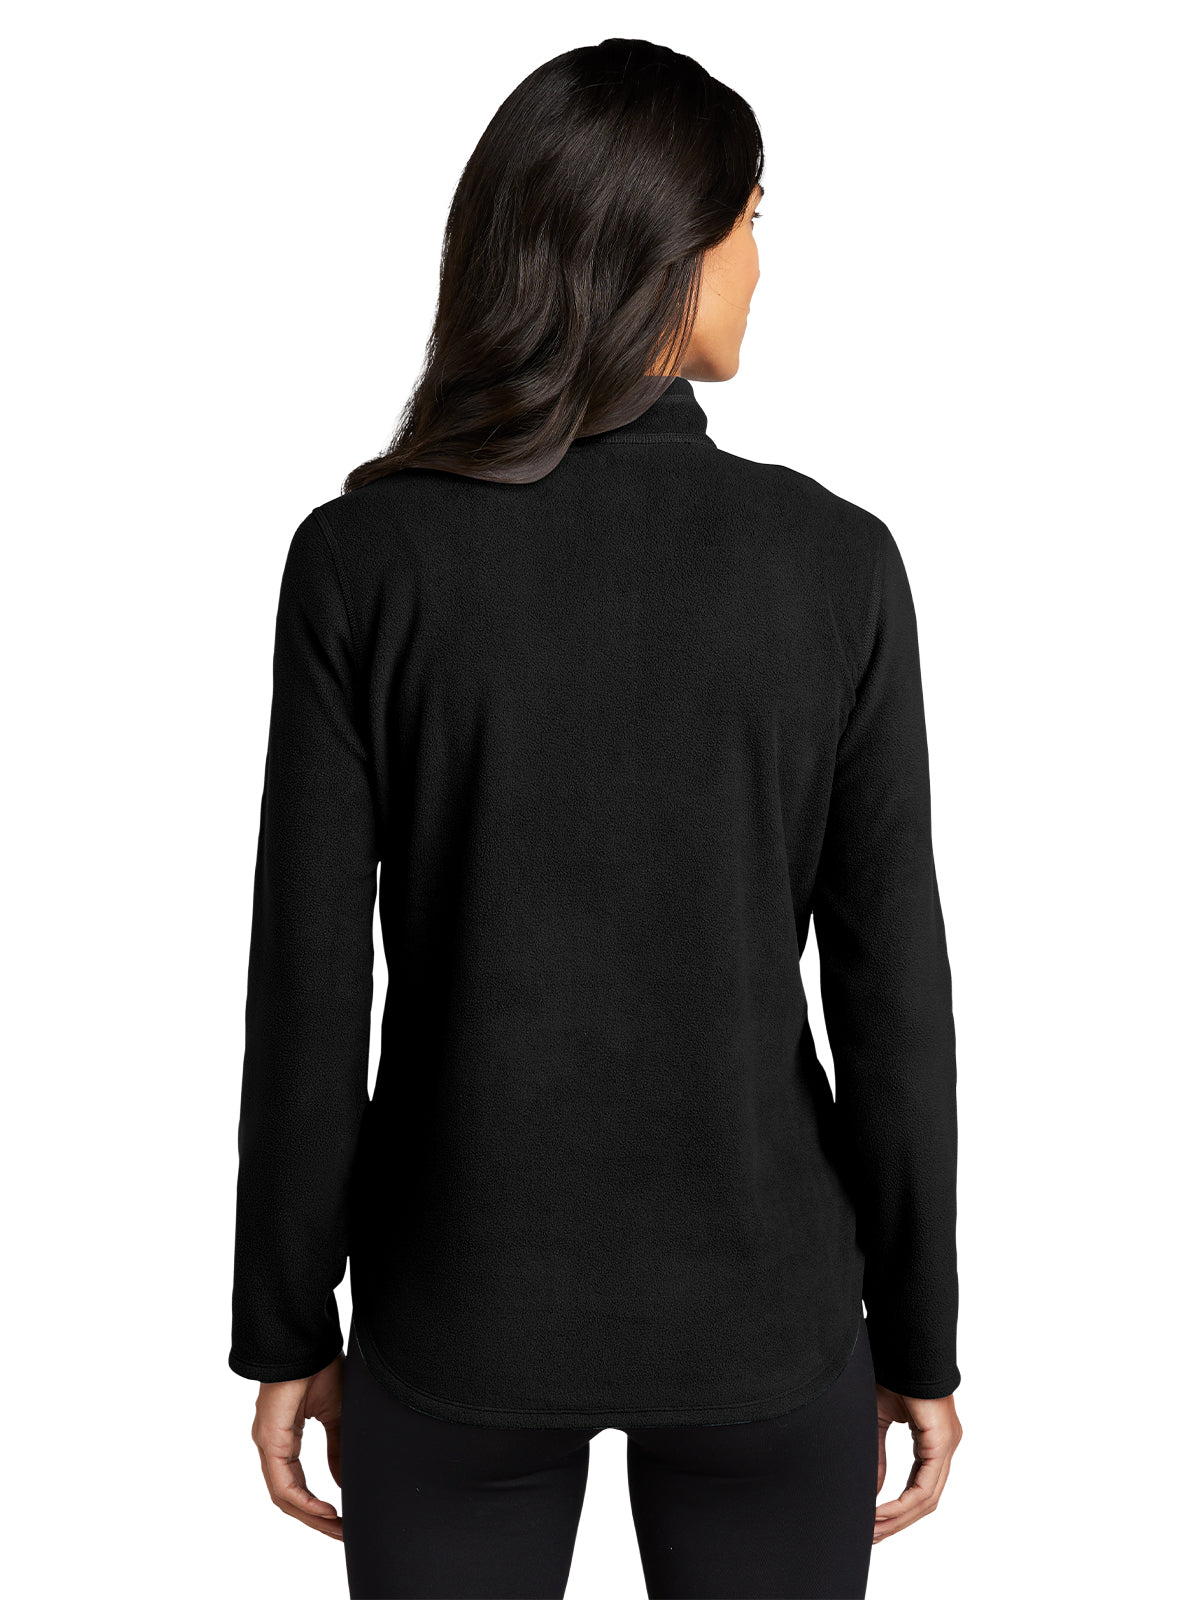 Women's 1/2-Zip Microfleece Jacket